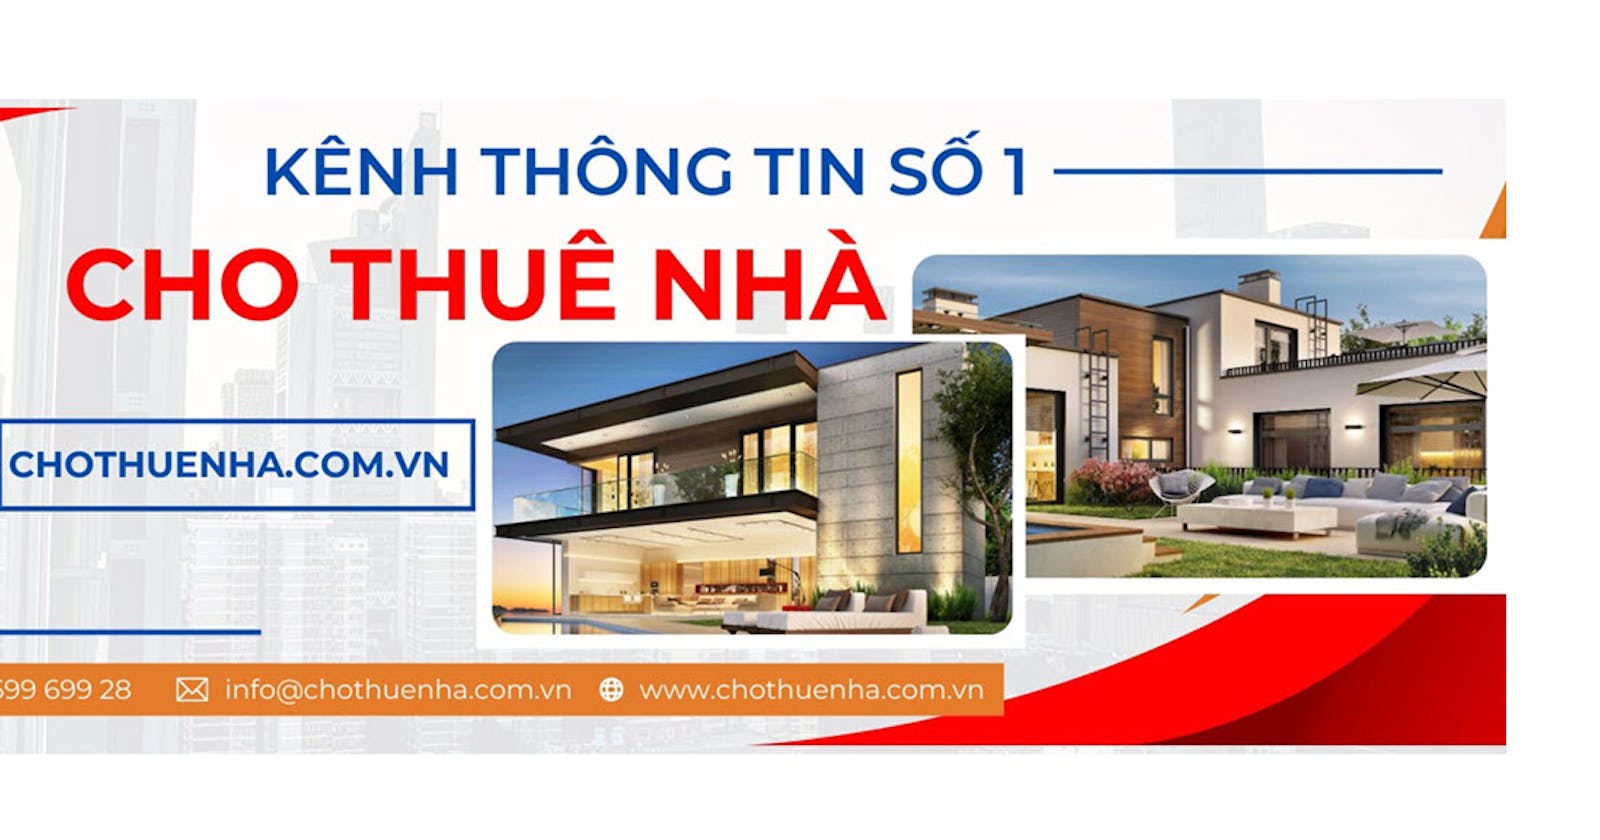 Chothuenha.com.vn - Kênh thông tin số 1 cho thuê nhà